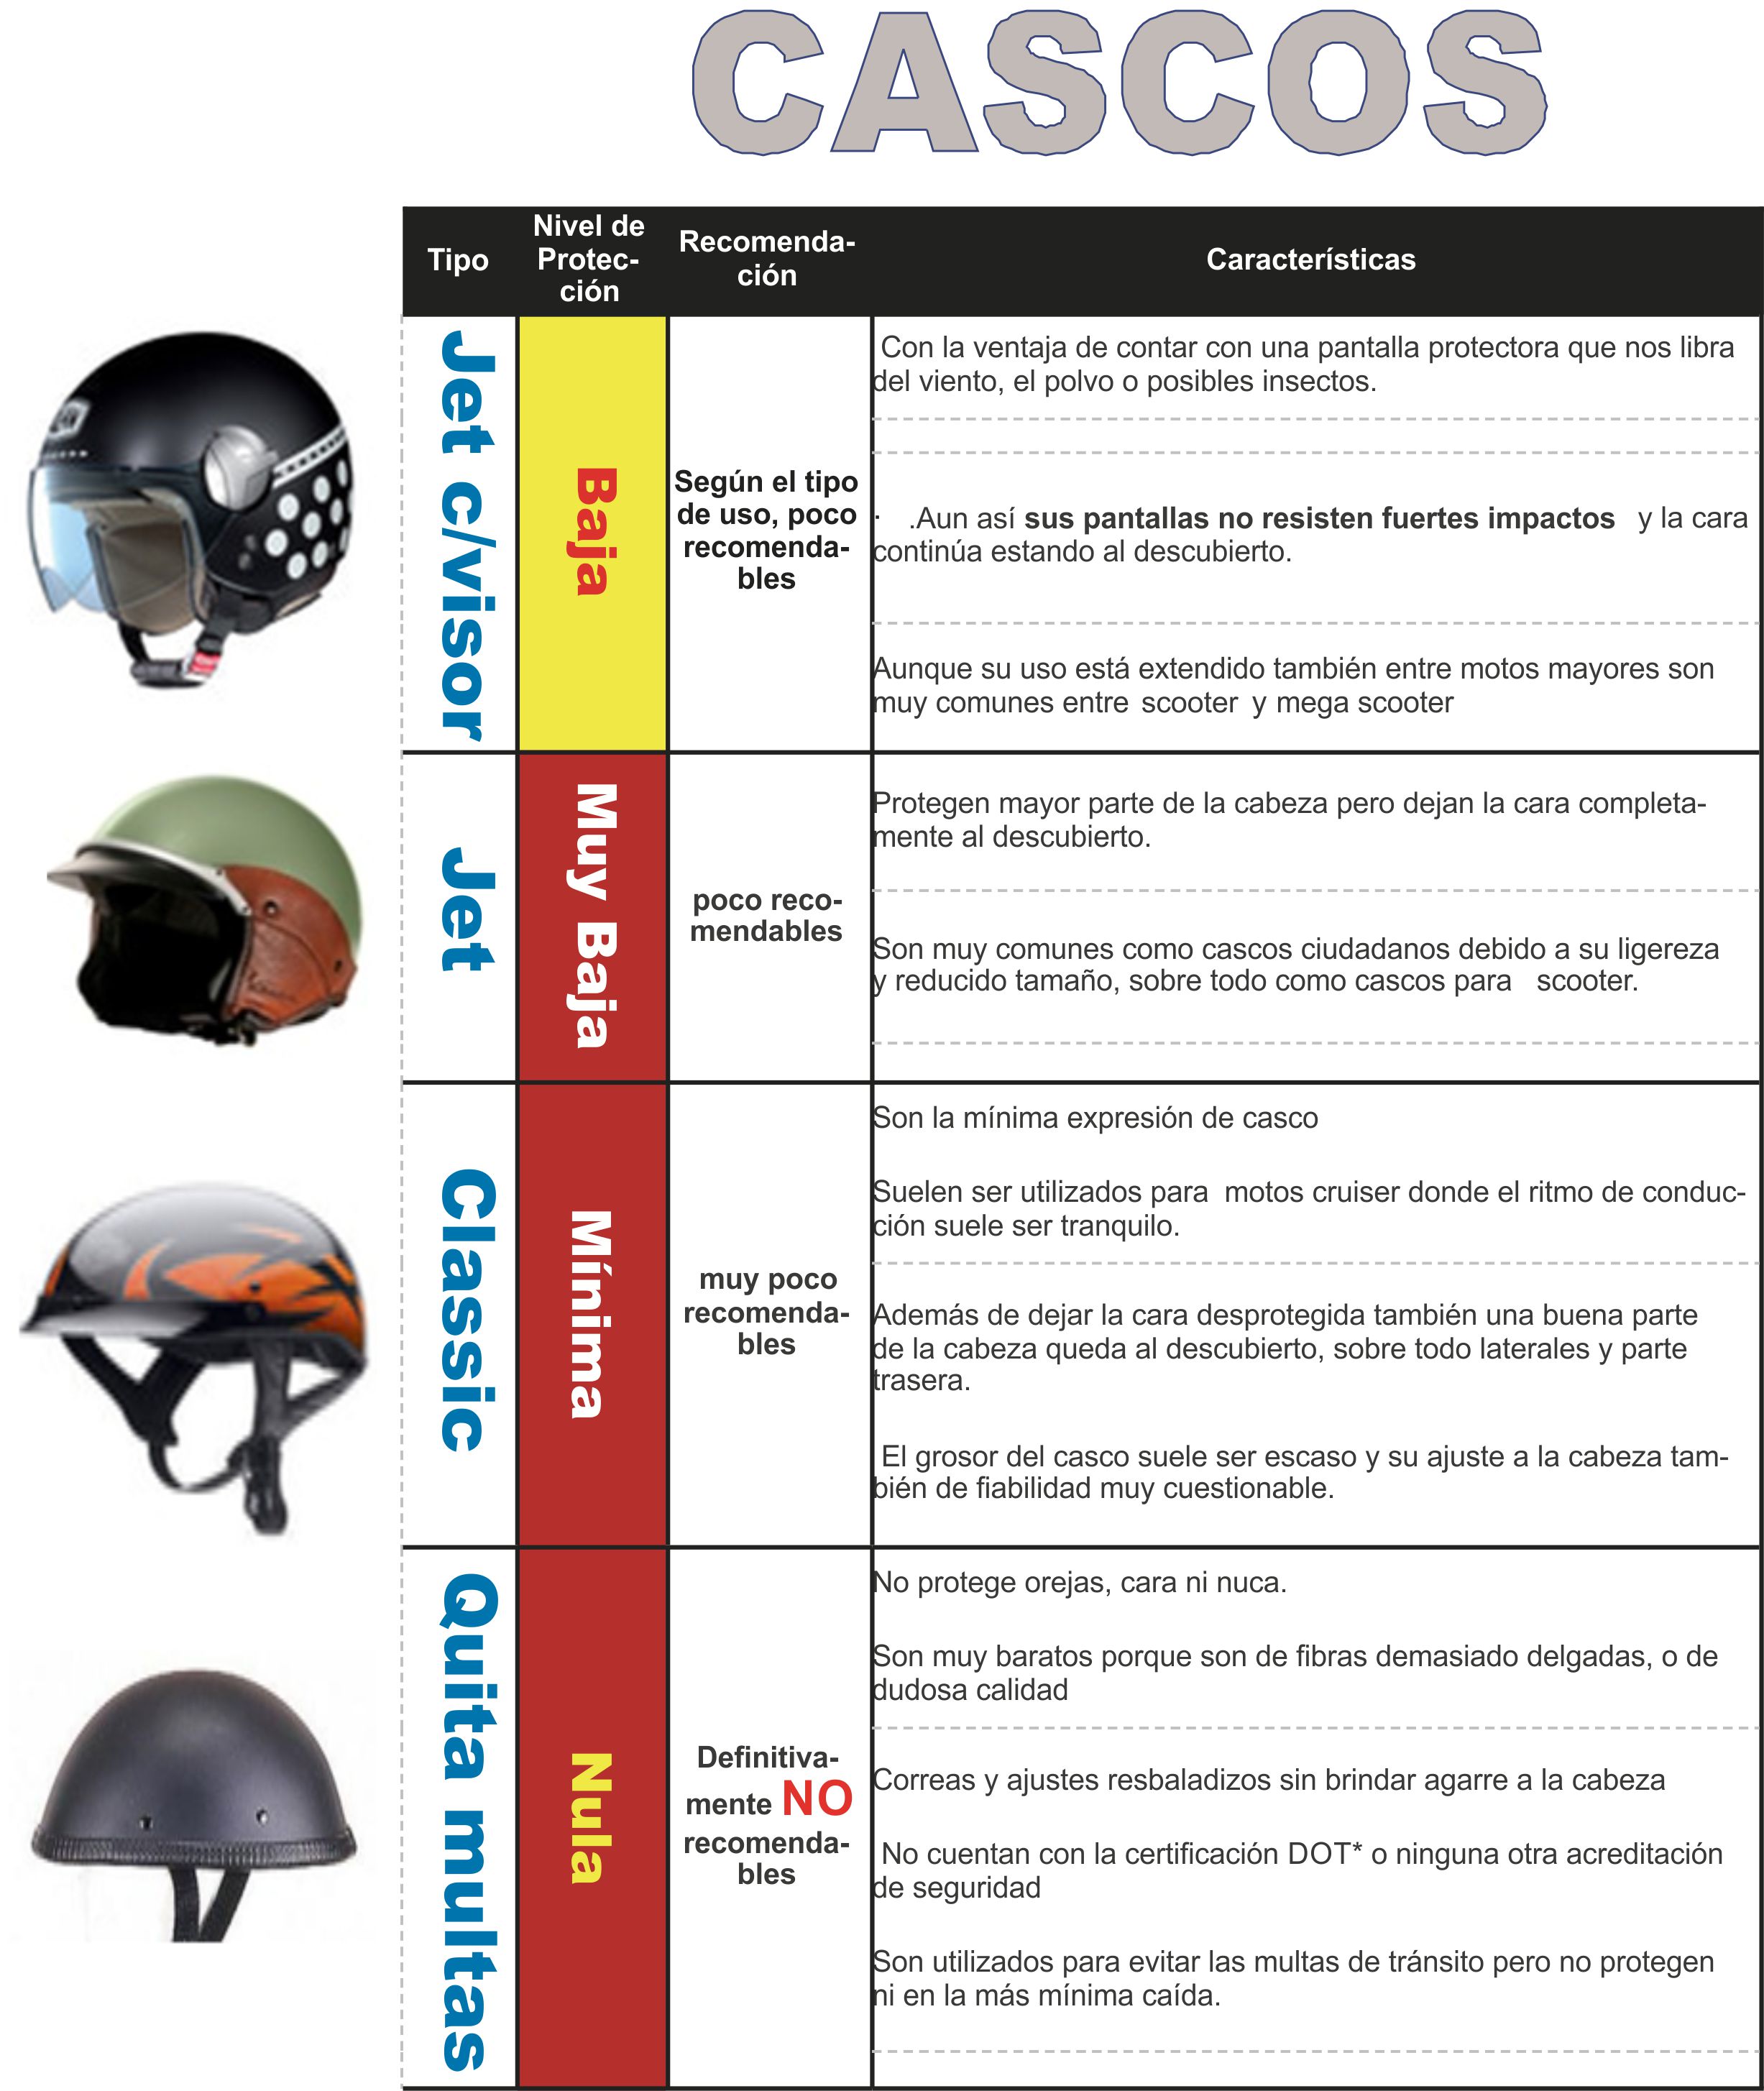 Caracterísitcas y tipos de cascos de seguridad